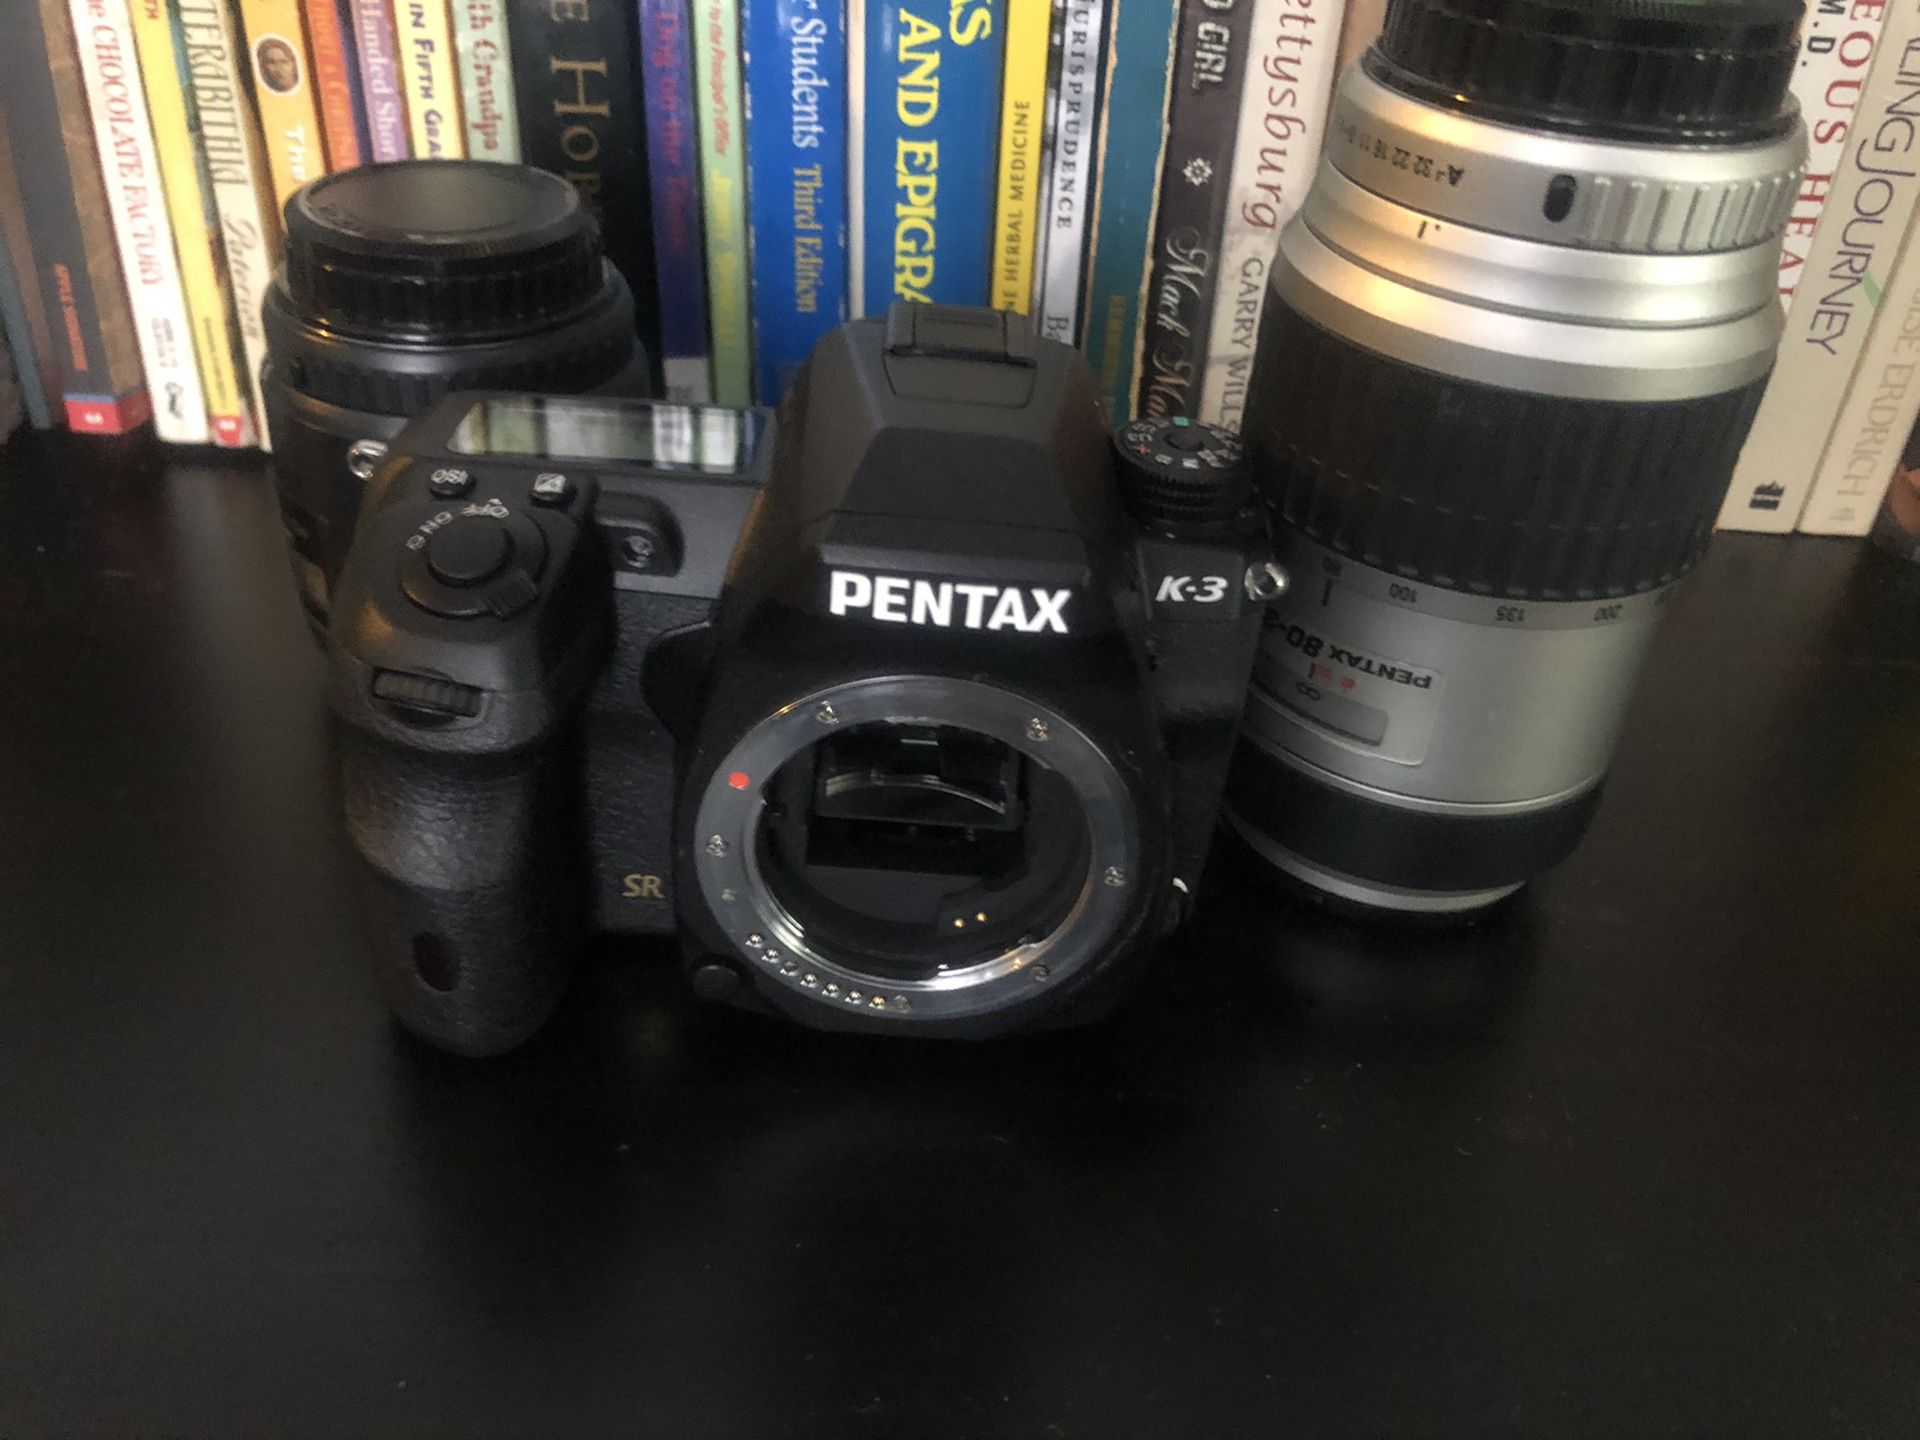 Pentax K3 camera